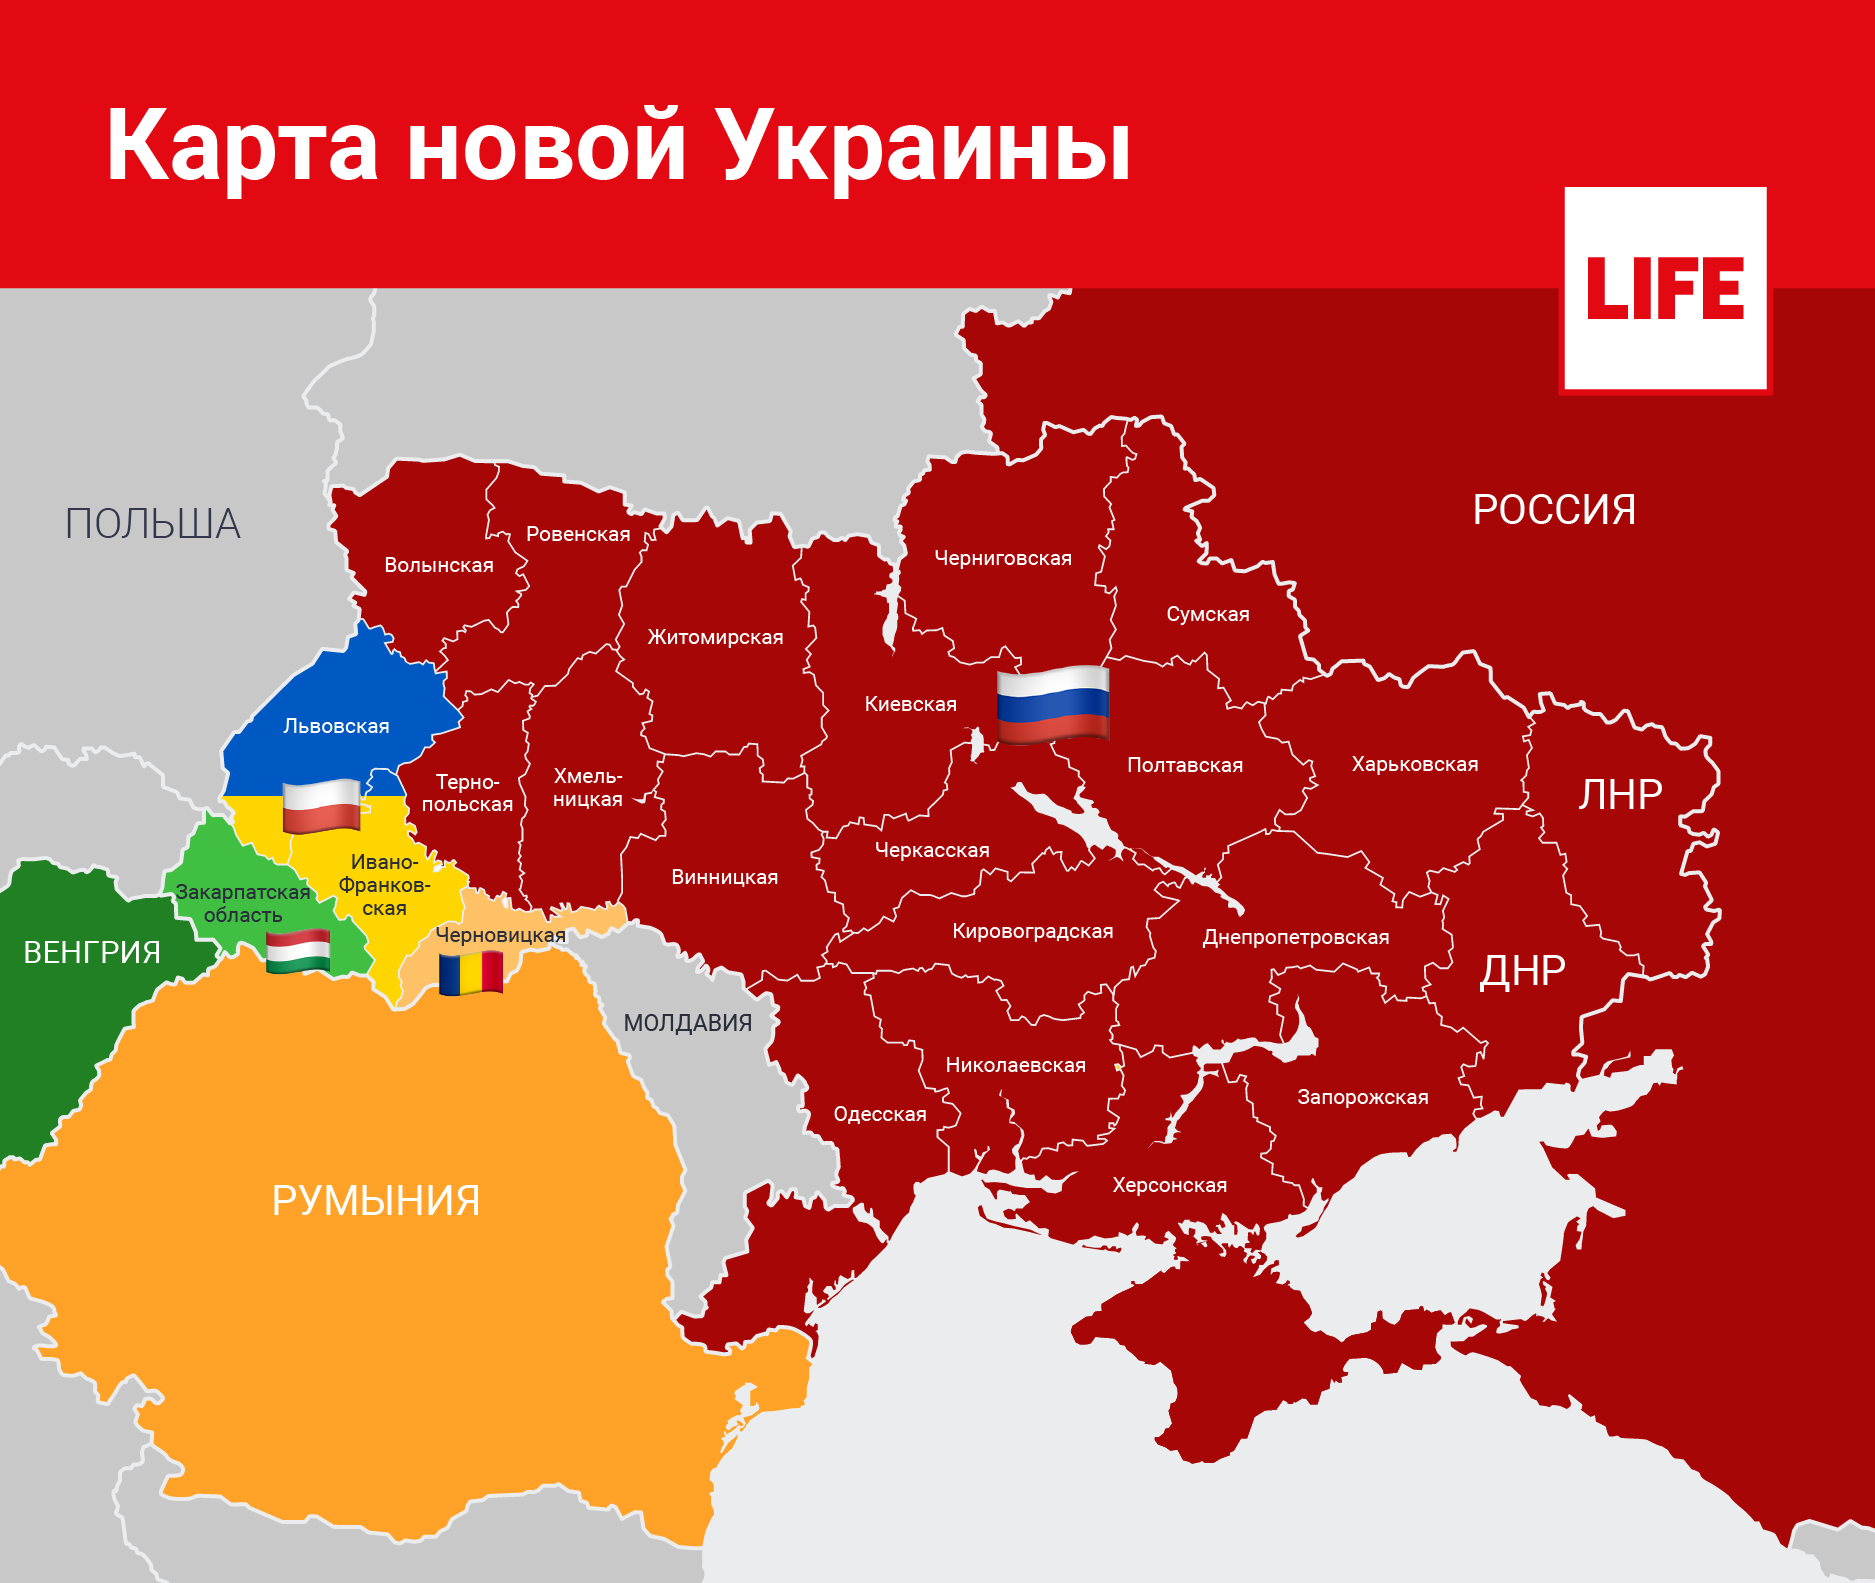 Карта новой Украины. Инфографика © LIFE